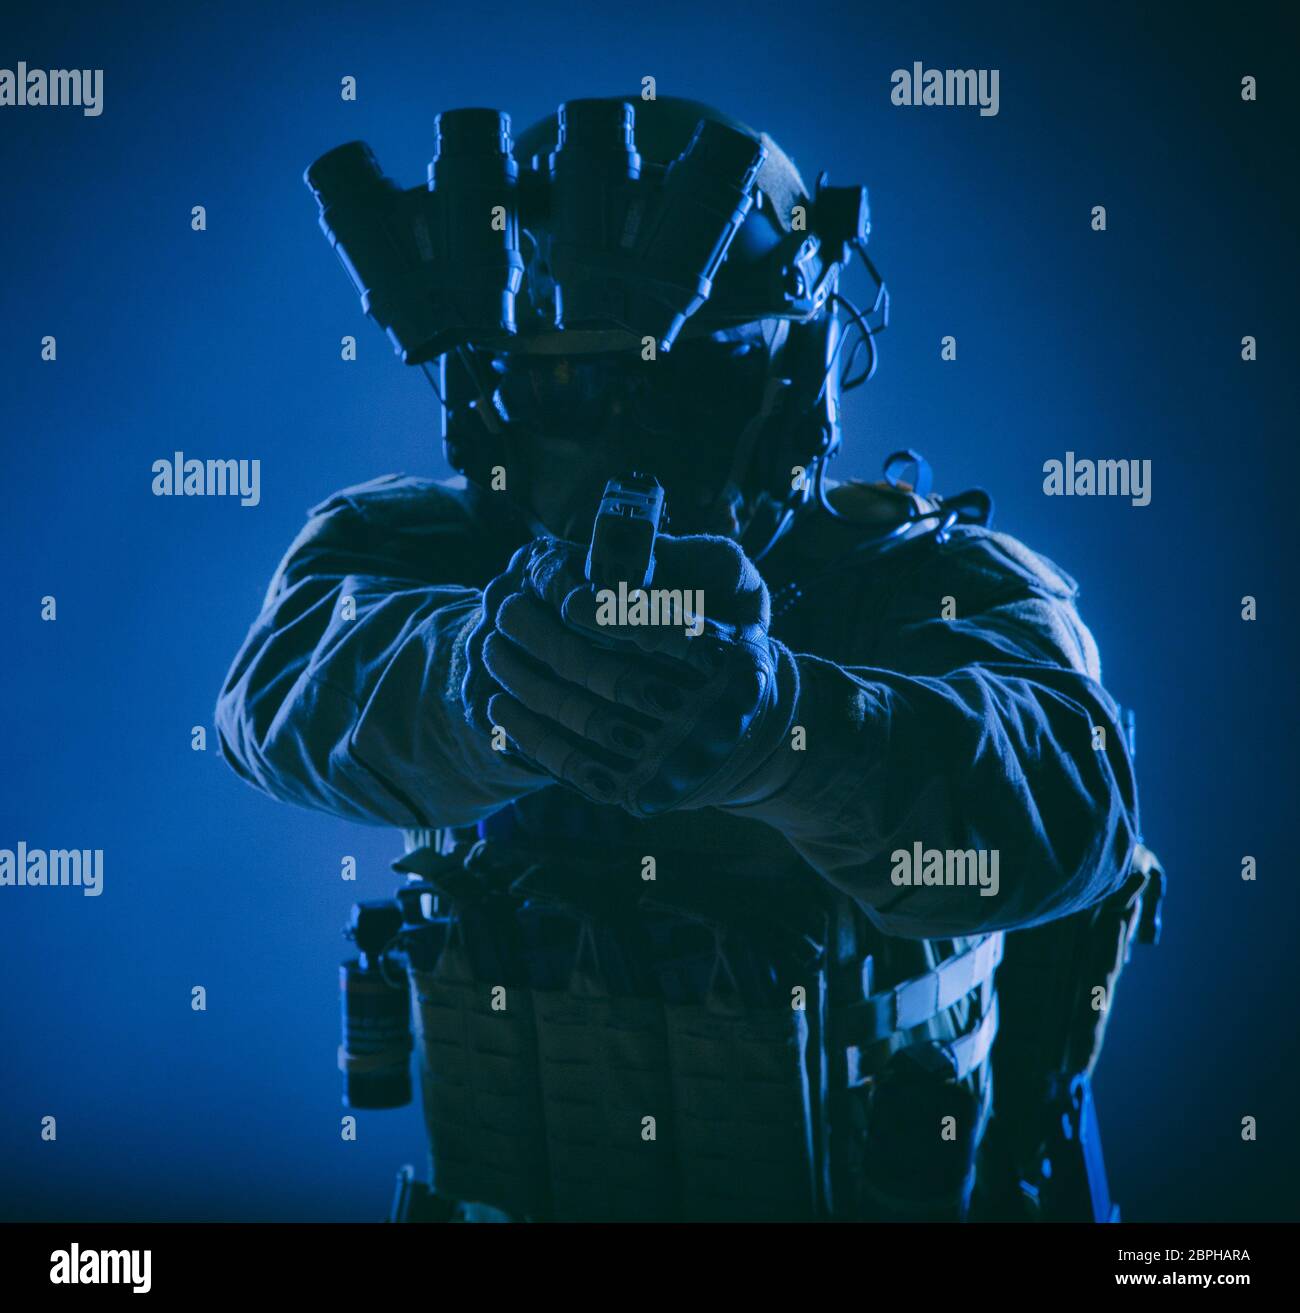 Soldat d'infanterie moderne, forces spéciales, la police chasse agent SWAT en casque et l'armure de corps, équipé d un dispositif de vision, visant avec service pisto Banque D'Images